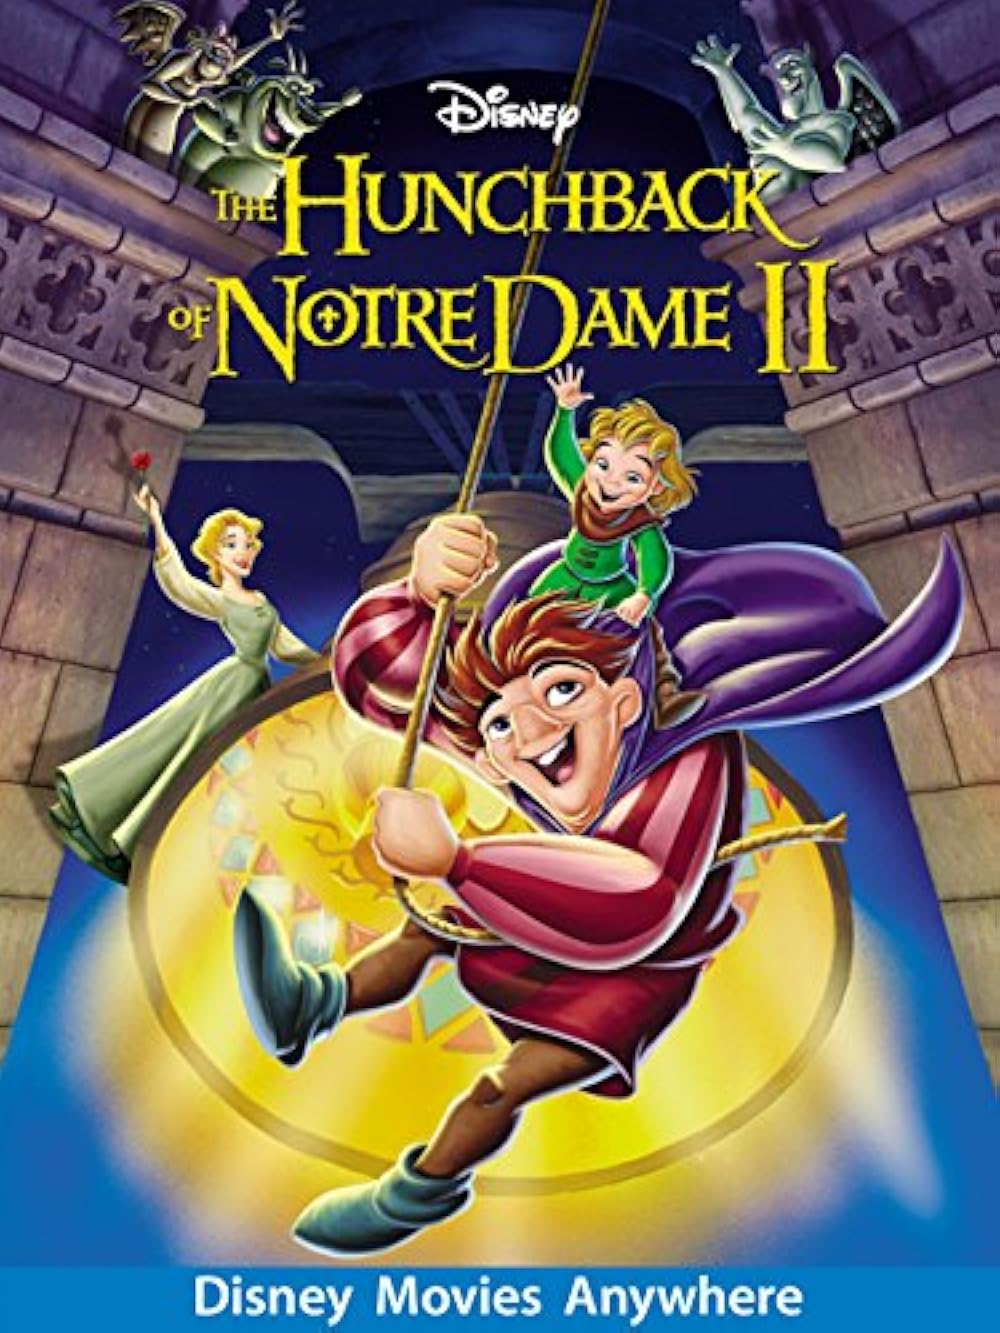 The Hunchback of Notre Dame II (2002) 128Kbps 23.976Fps 48Khz 2.0Ch Disney+ DD+ E-AC3 Turkish Audio TAC